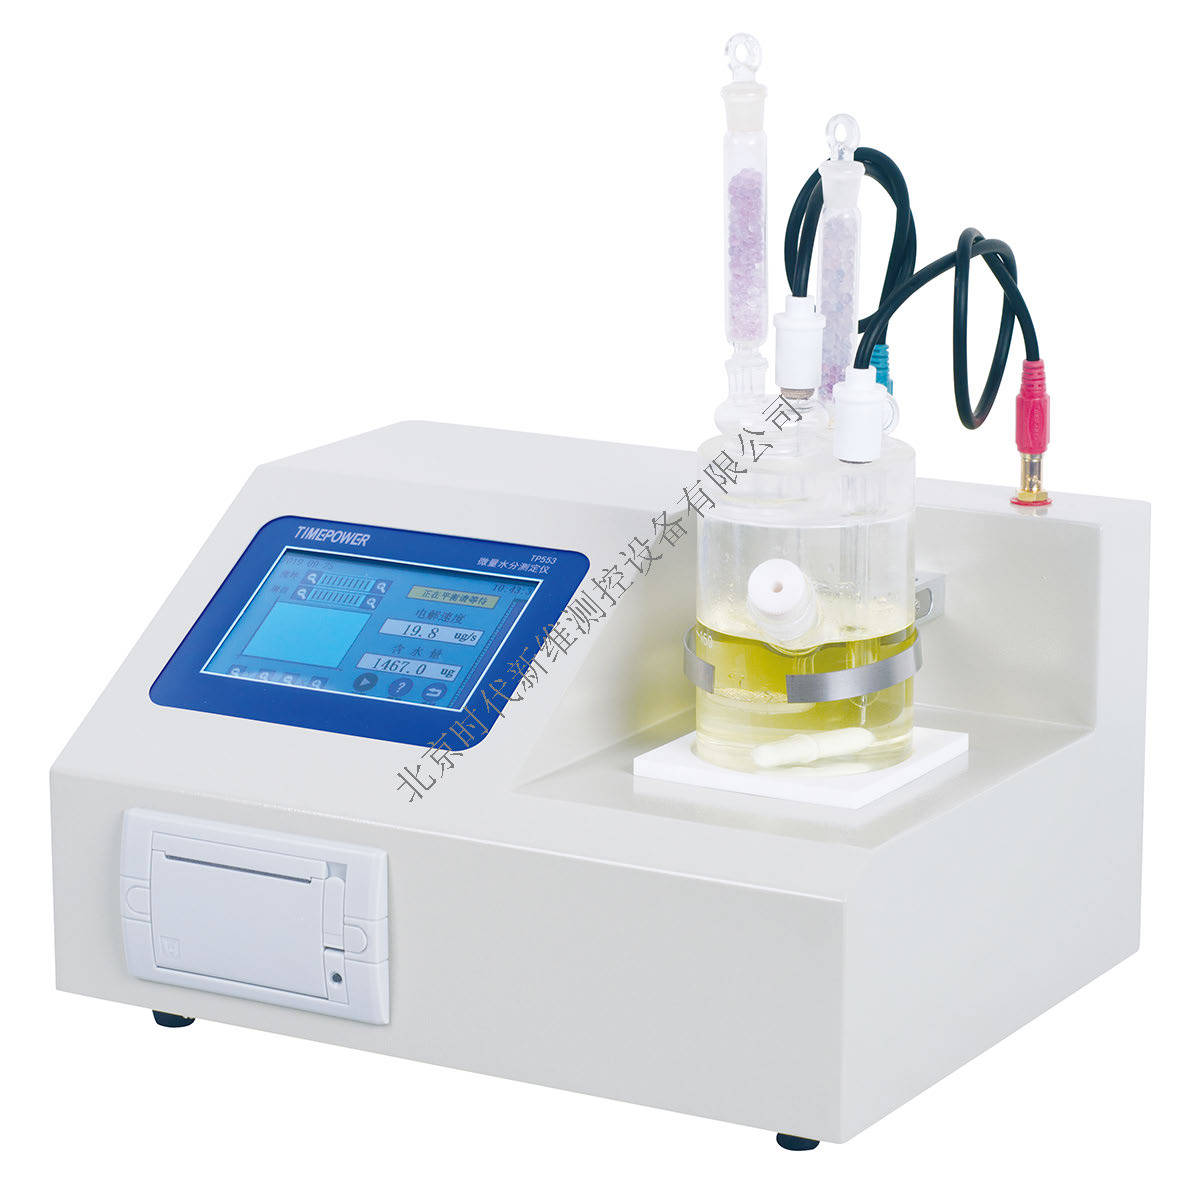 微量水分检测仪全自动微量水分测定仪